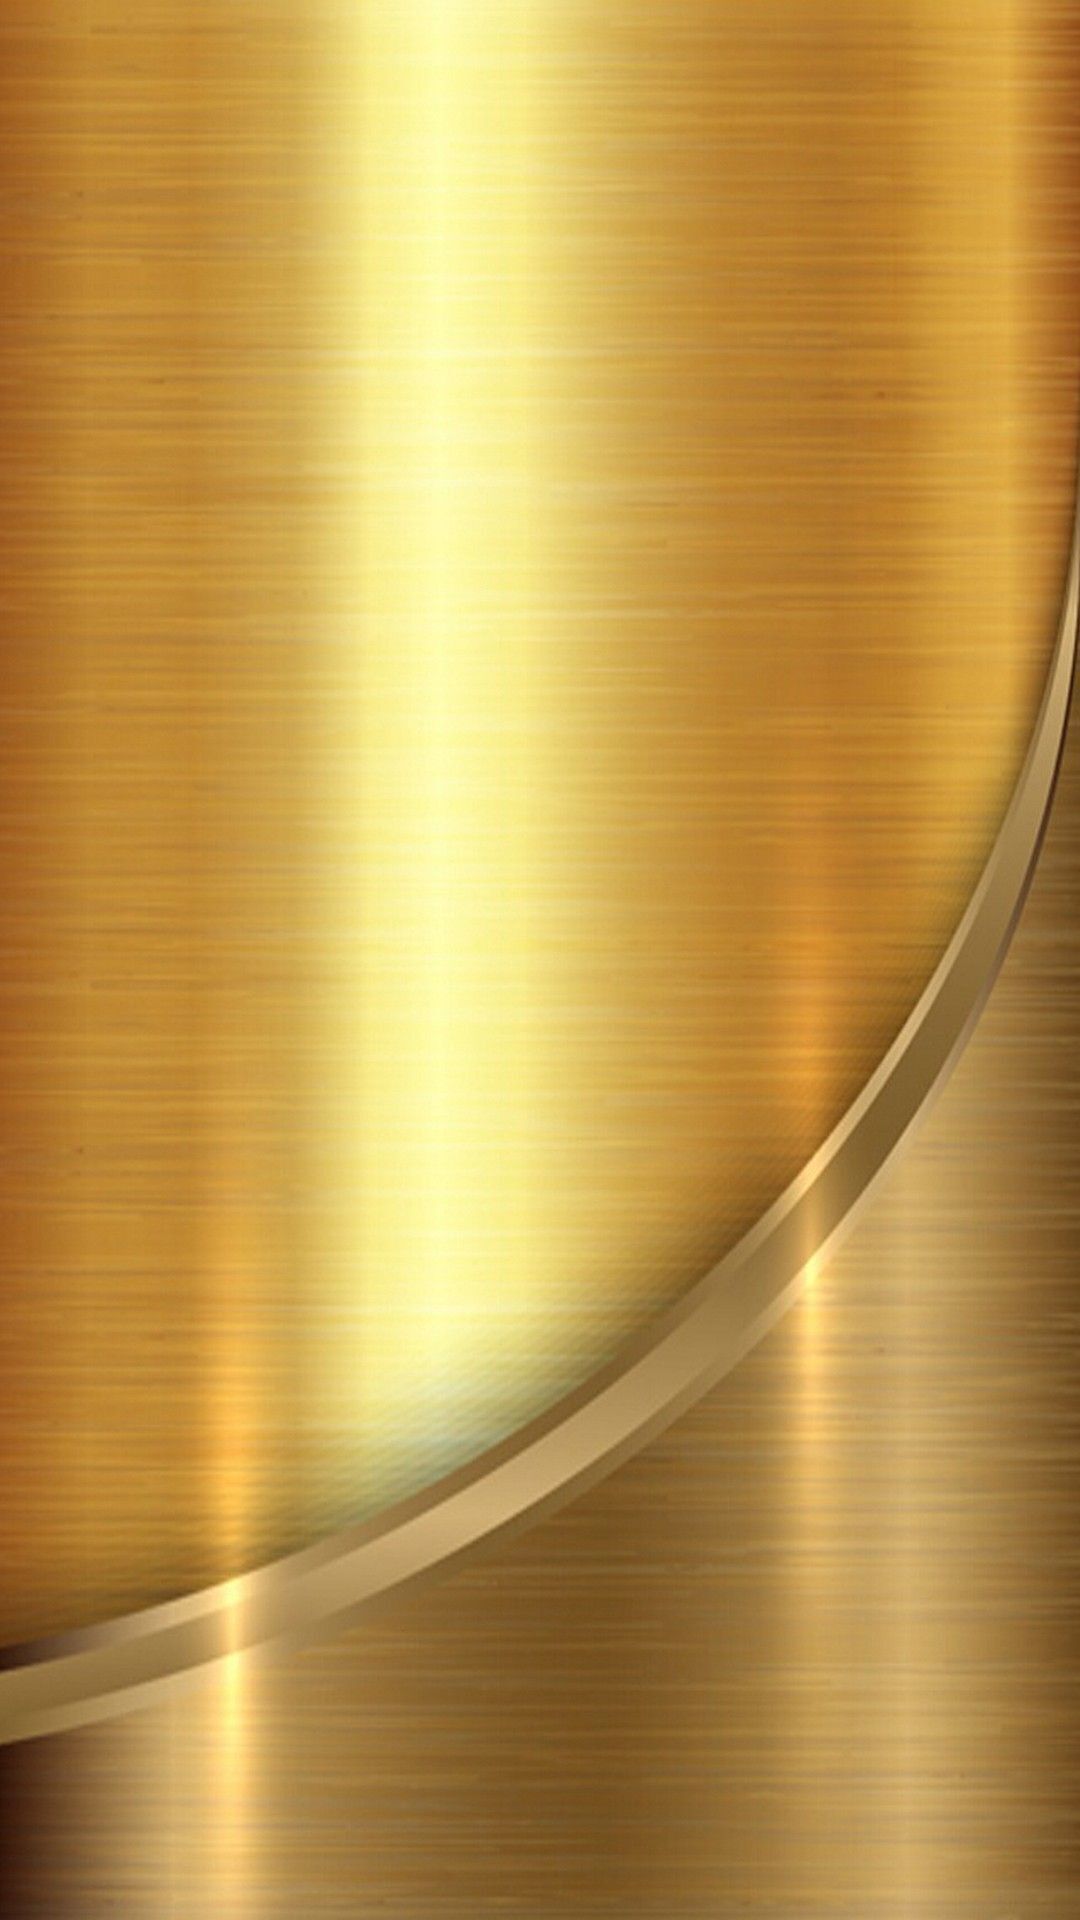 Nền vàng sang trọng. Kết cấuẢnh có sẵn557984170 | Shutterstock